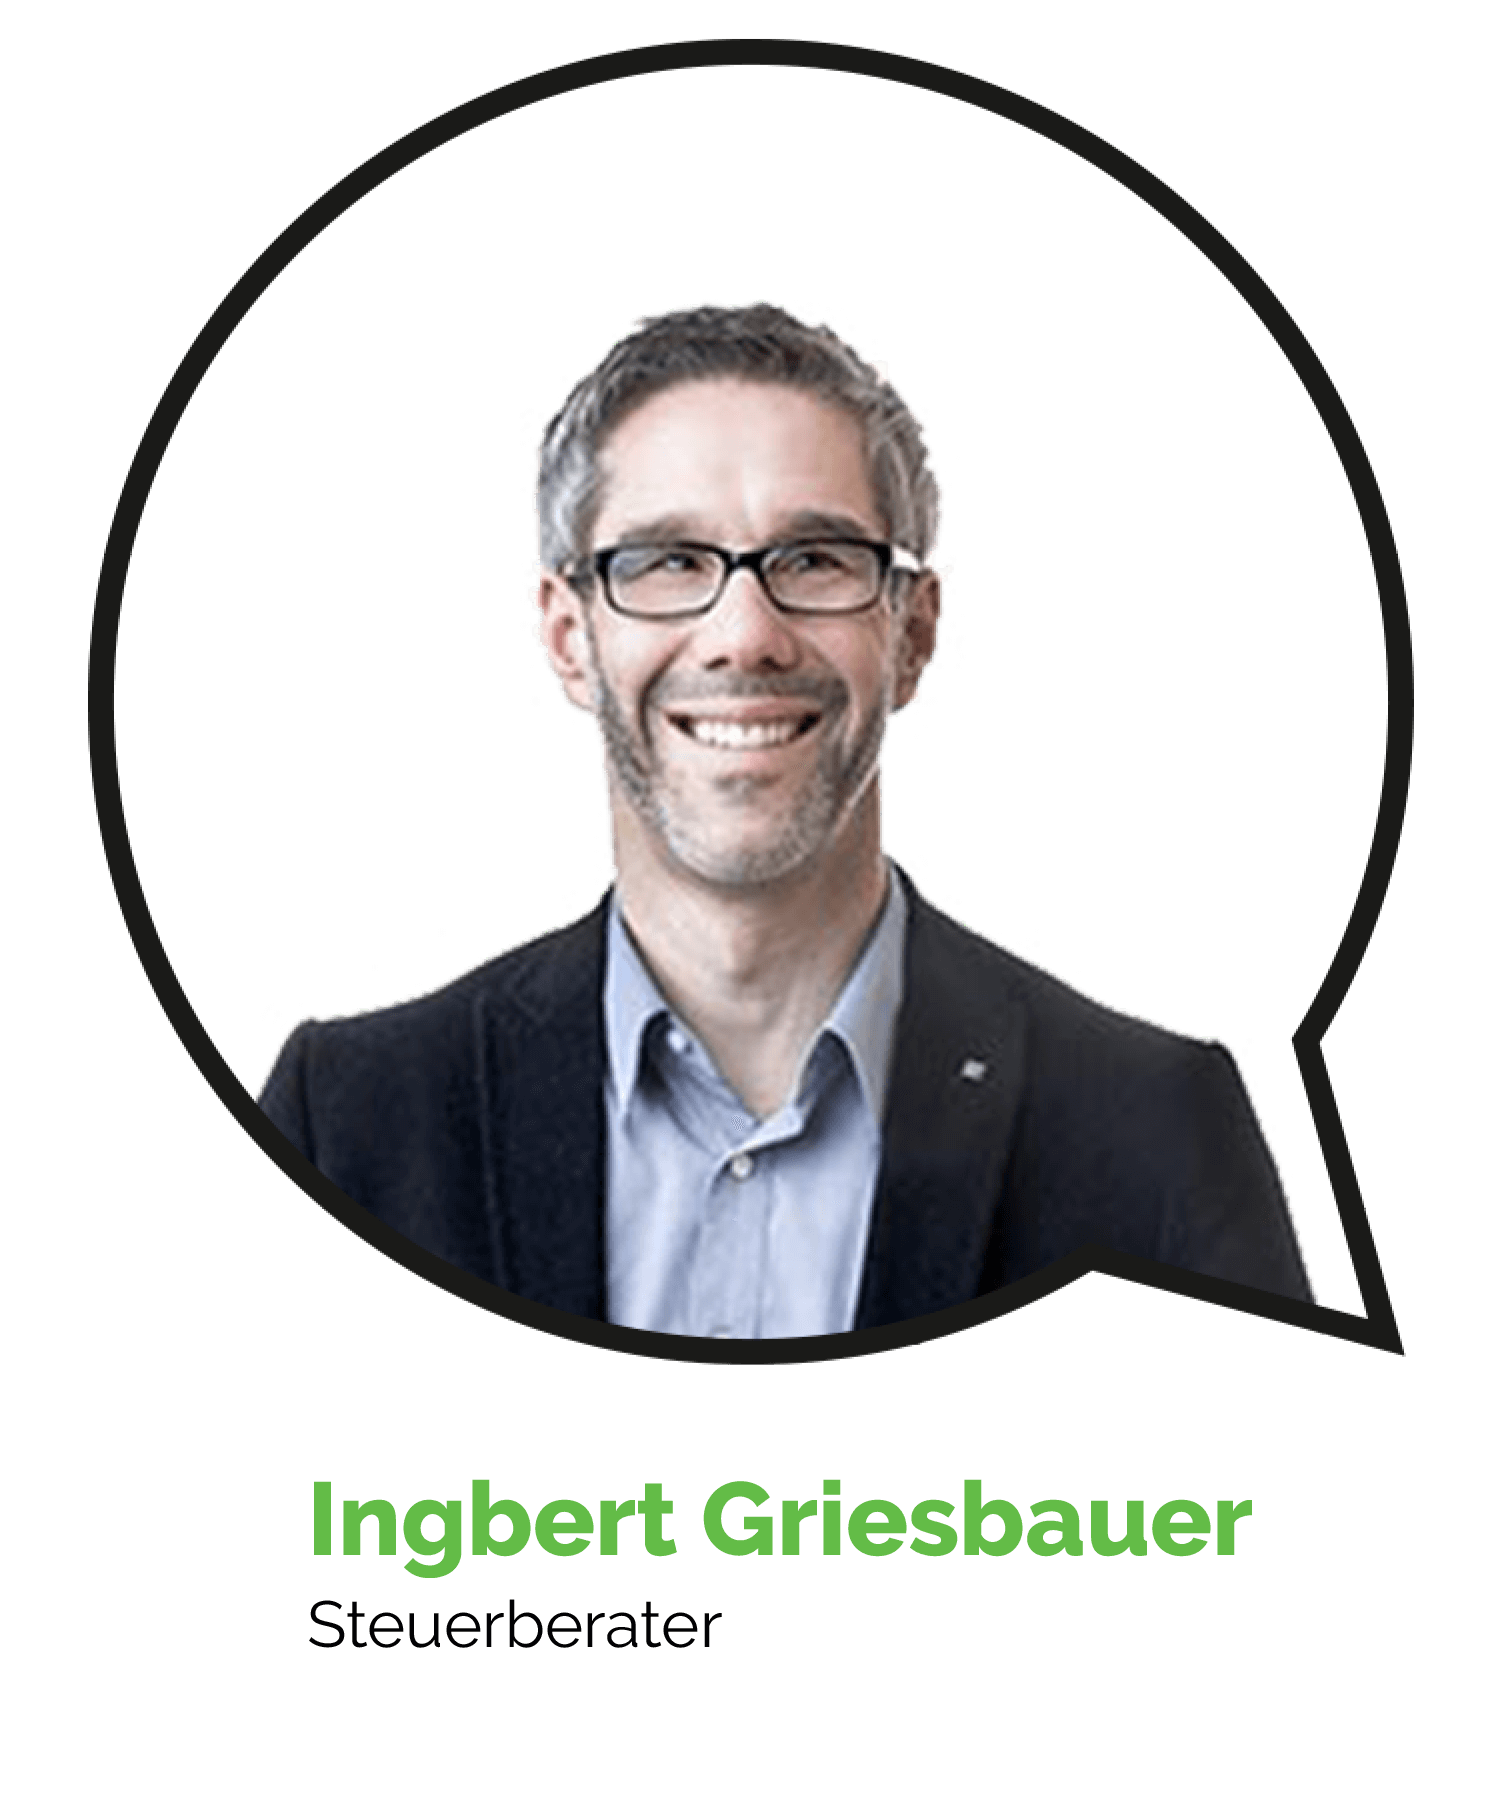 Ingbert Griesbauer